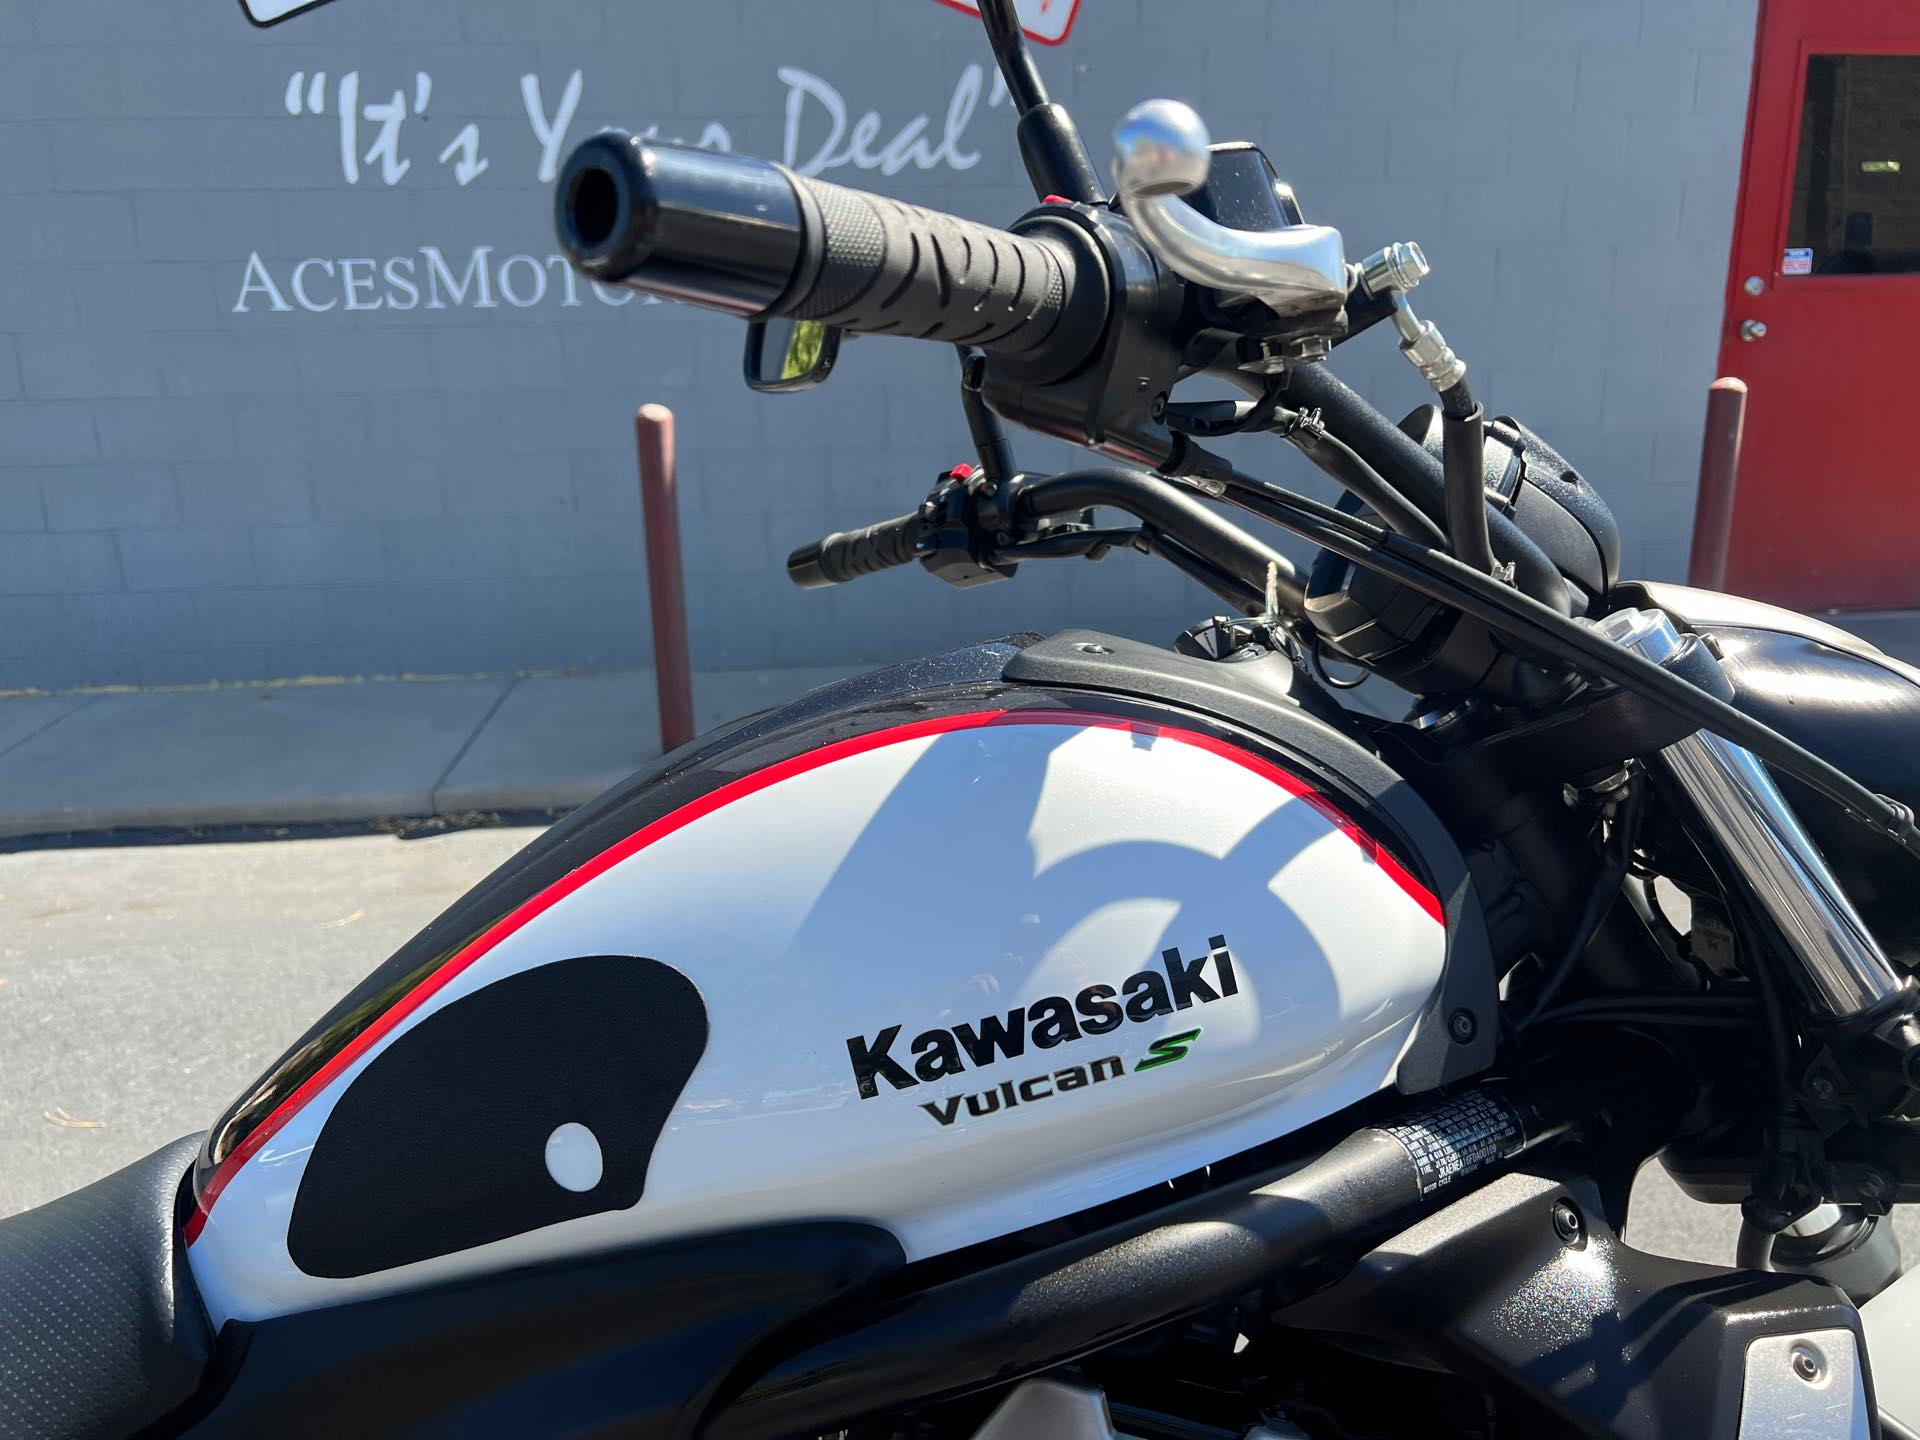 2015 Kawasaki Vulcan S Base at Aces Motorcycles - Fort Collins